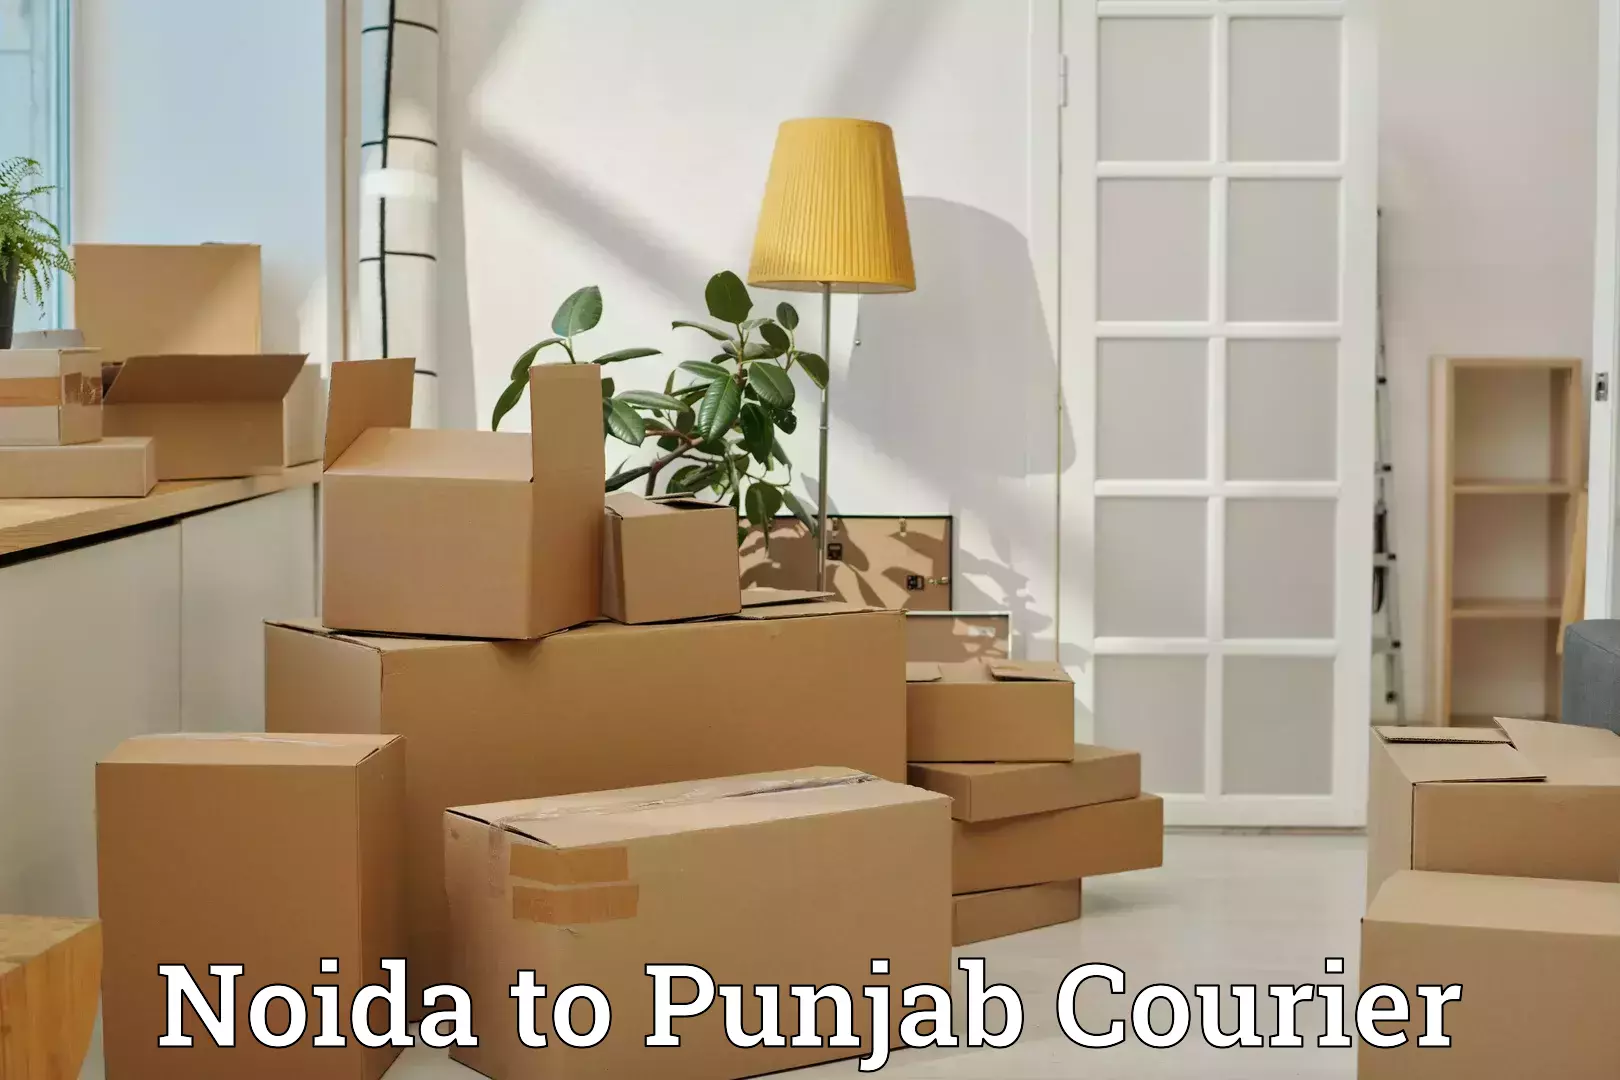 Baggage transport professionals Noida to Punjab